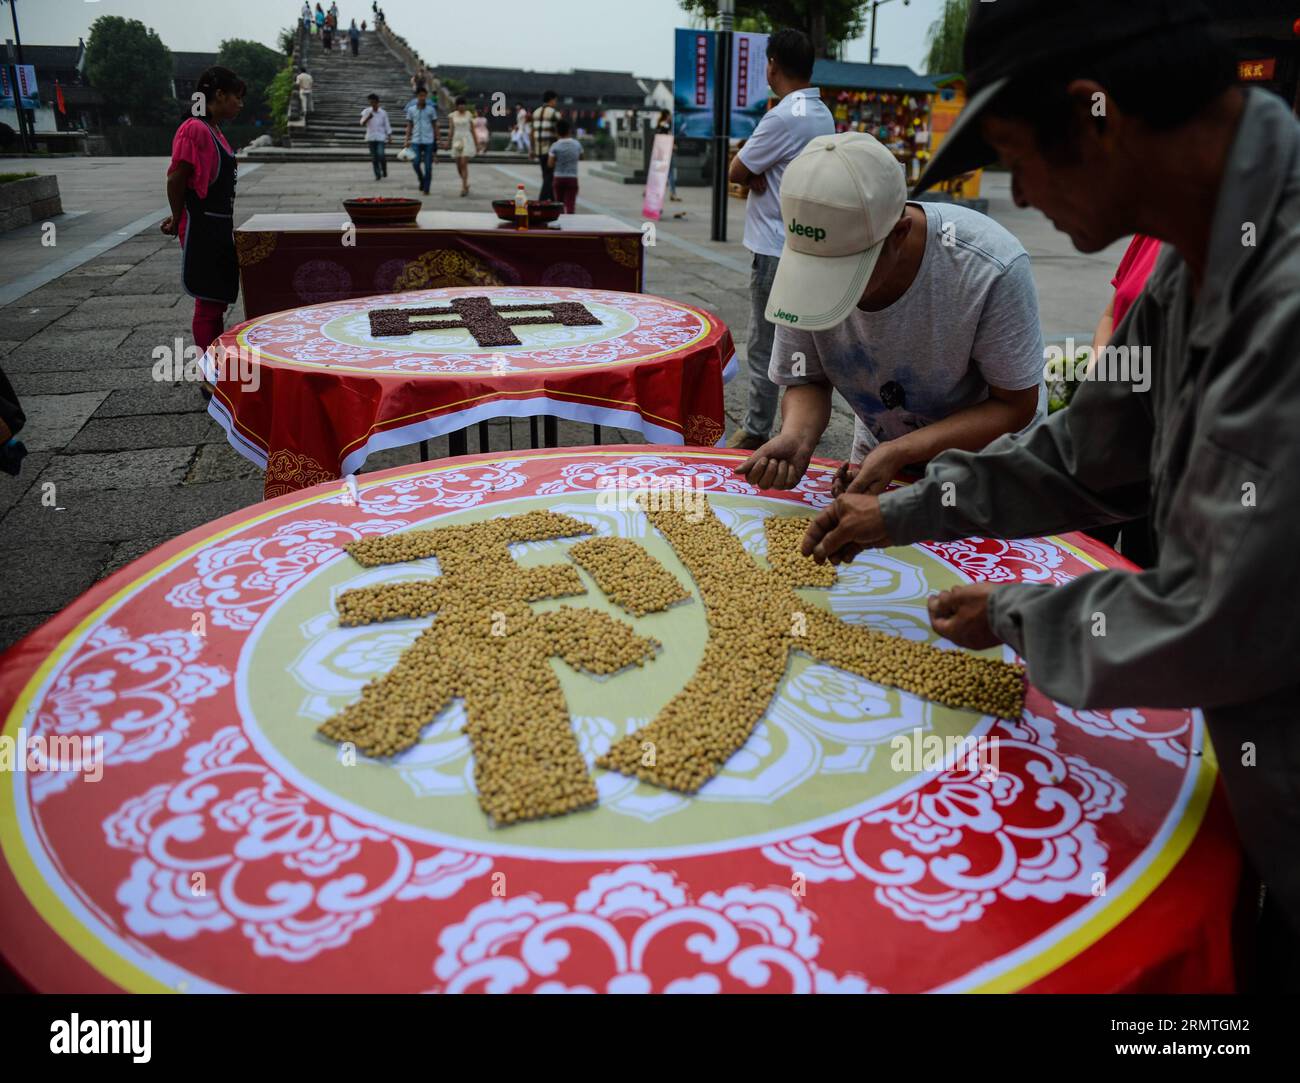 (140904) -- HANGZHOU, 4 de septiembre de 2014 -- Los residentes locales hacen caracteres chinos con frijoles de soja y frijoles rojos en un banquete de calle para celebrar el próximo Festival del Medio Otoño en la ciudad de Tangxi de Hangzhou, provincia de Zhejiang del este de China, 4 de septiembre de 2014. El Festival del Medio Otoño, que se celebra el 8 de septiembre de este año, es un festival tradicional chino para reuniones familiares. (mp) CHINA-ZHEJANG-TANGXI CIUDAD-MEDIOS DE OTOÑO FESTIVAL-CELEBRACIÓN (CN) XuxYu PUBLICATIONxNOTxINxCHN Hangzhou Sept 4 2014 Los residentes locales hacen personajes chinos por soja y frijoles rojos en un banquete de calle larga para celebrar el Comi Foto de stock